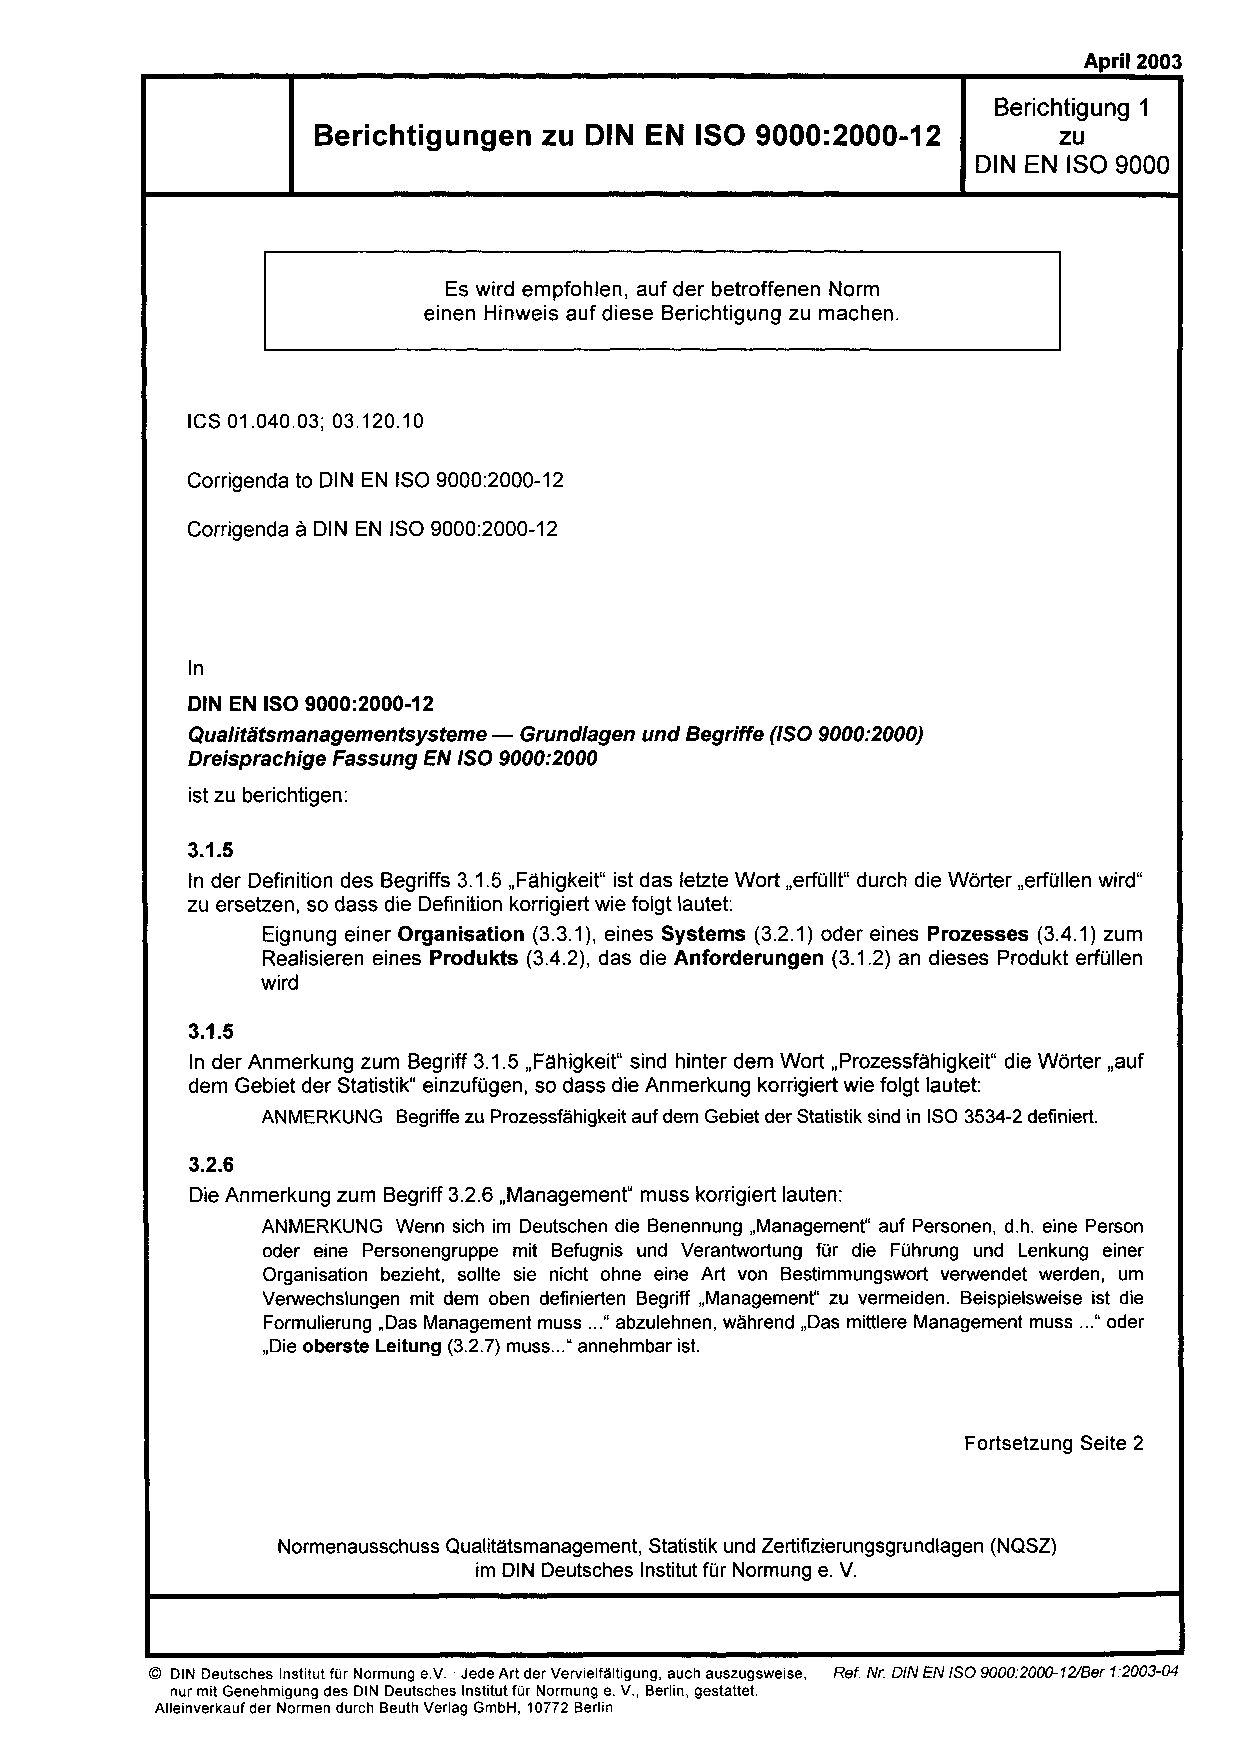 DIN EN ISO 9000 Berichtigung 1:2003封面图